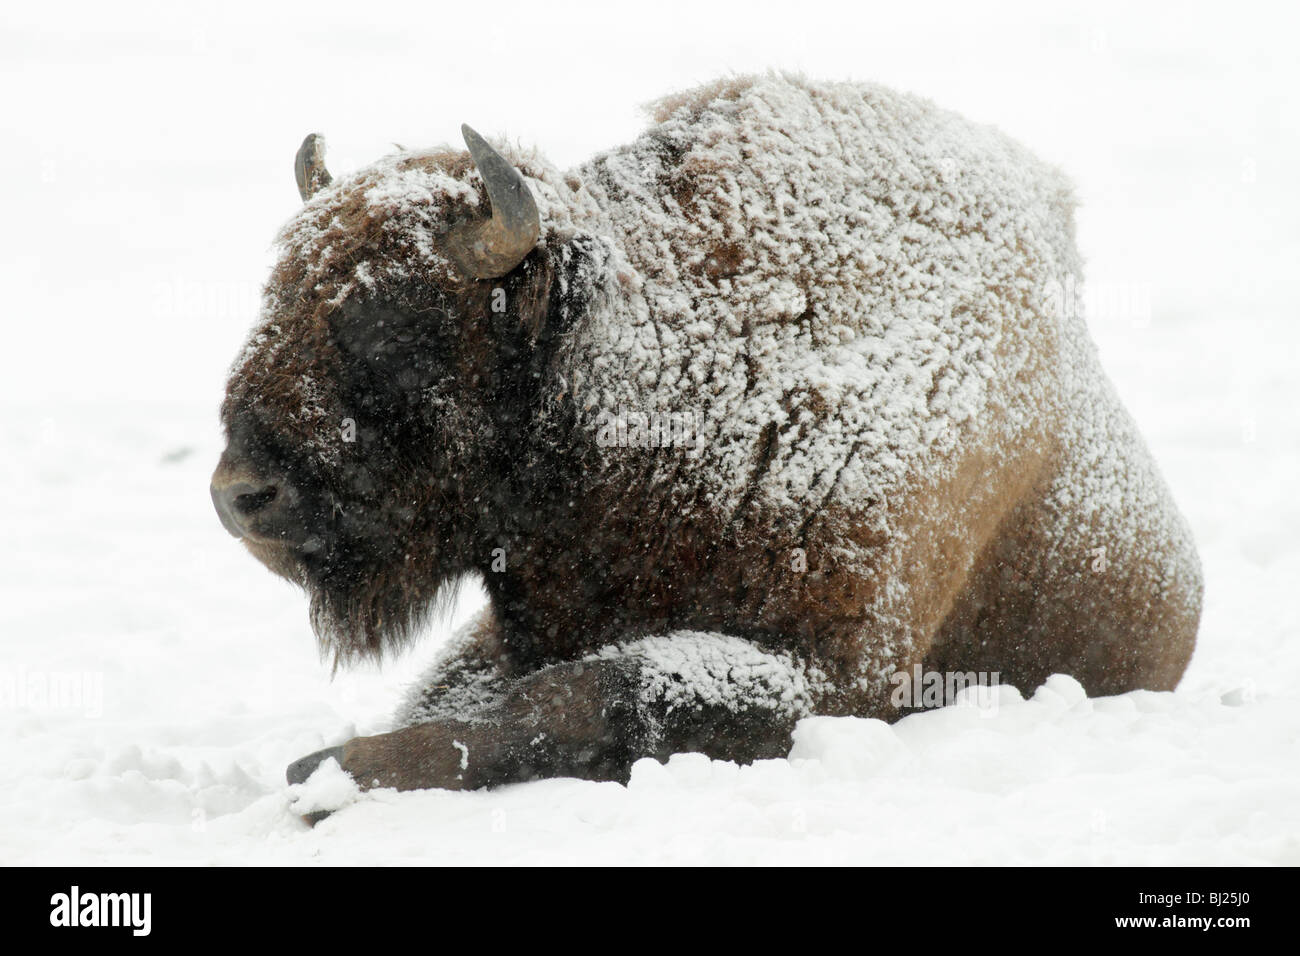 El bisonte europeo, bison bonasus, Bull, cubierto de nieve, Alemania Foto de stock